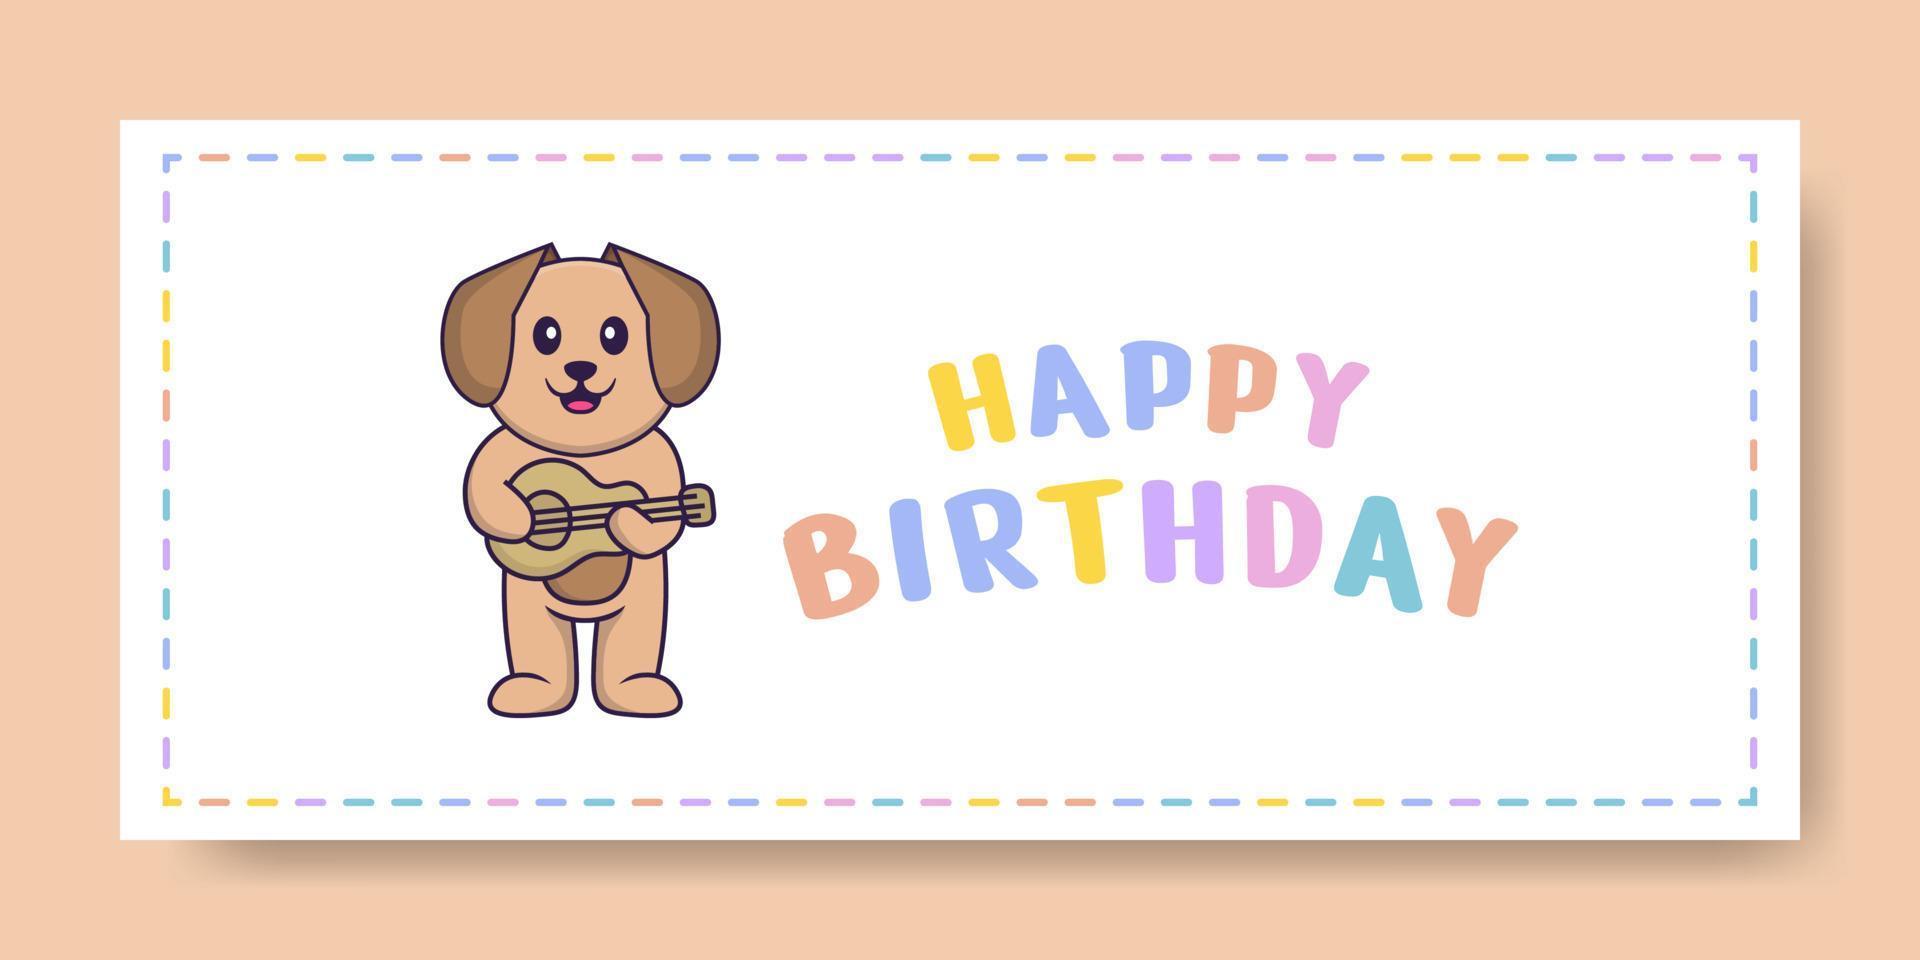 bannière de joyeux anniversaire avec un personnage de dessin animé de chien mignon. illustration vectorielle vecteur